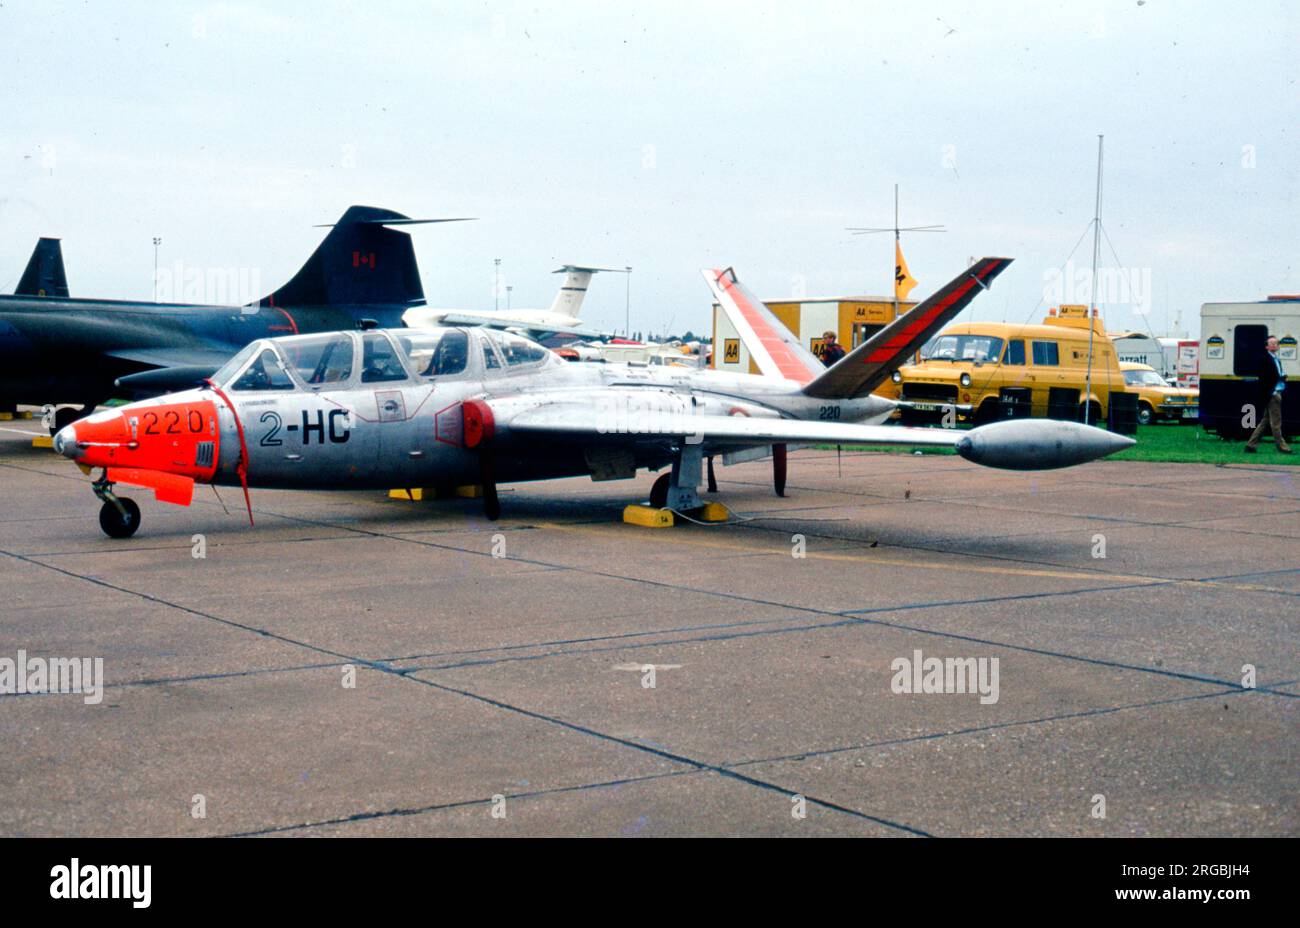 Armee de l'Air - Fouga CM.170 Magister 220 / 2-HC, auf der RAF Fairford im Juli 1991. (Armee de l'Air - Französische Luftwaffe). Stockfoto